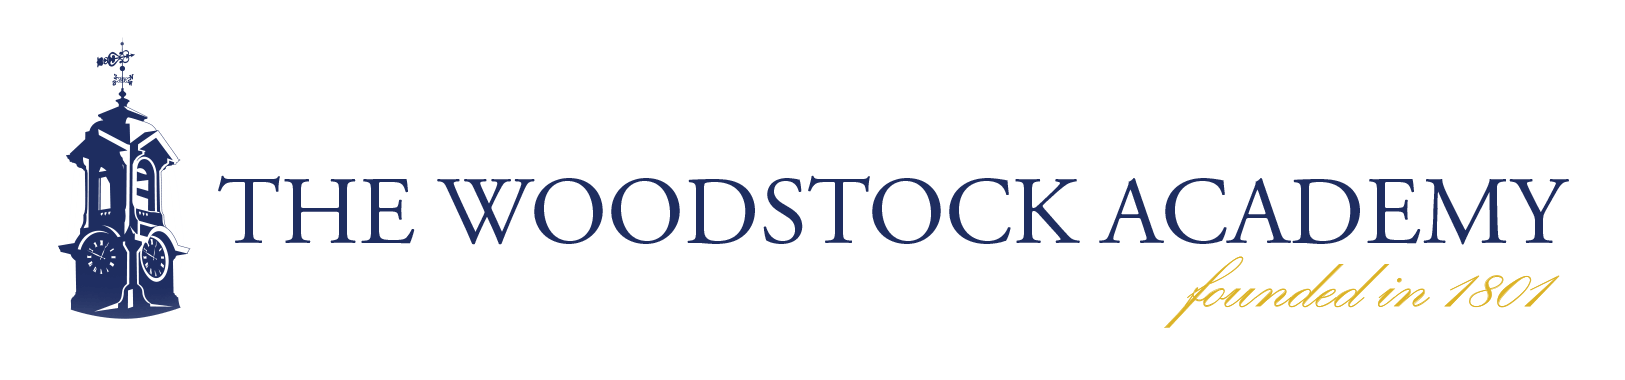 Woodstock Academy Logo - The Woodstock Academy / Homepage